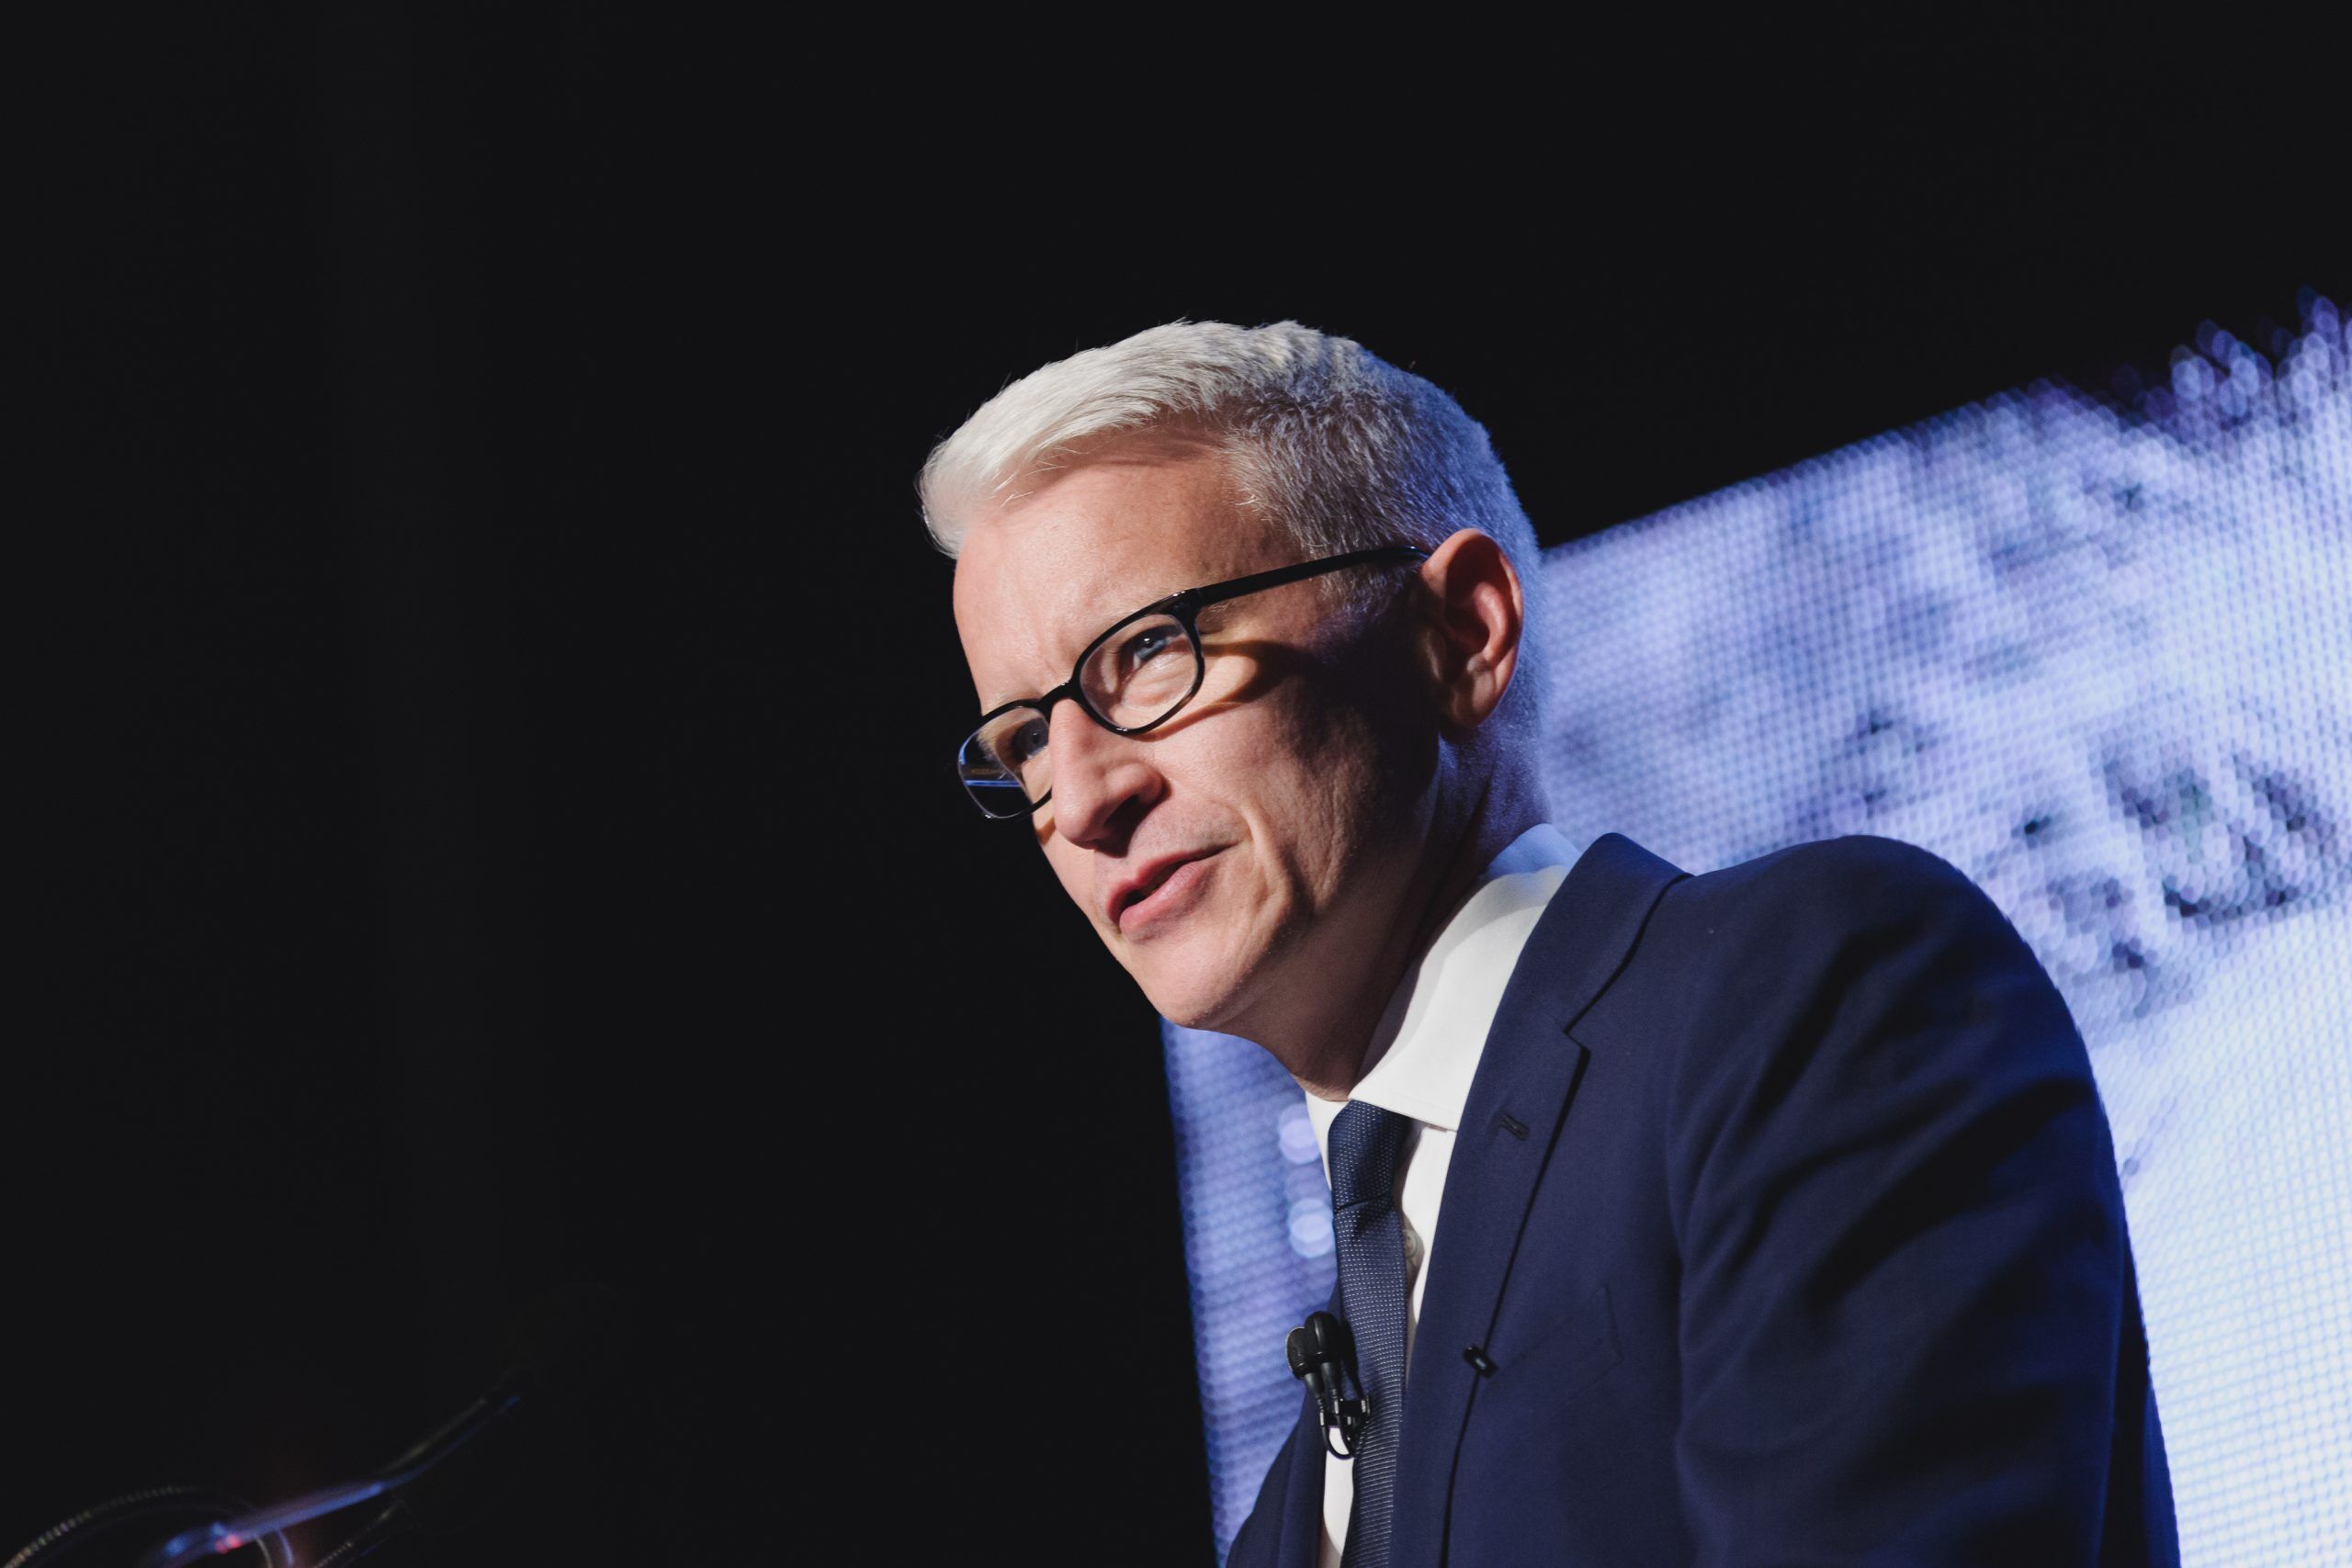 5/15/2016: CNN journalist Anderson Cooper speaking in Toronto at the Einstein Gala.